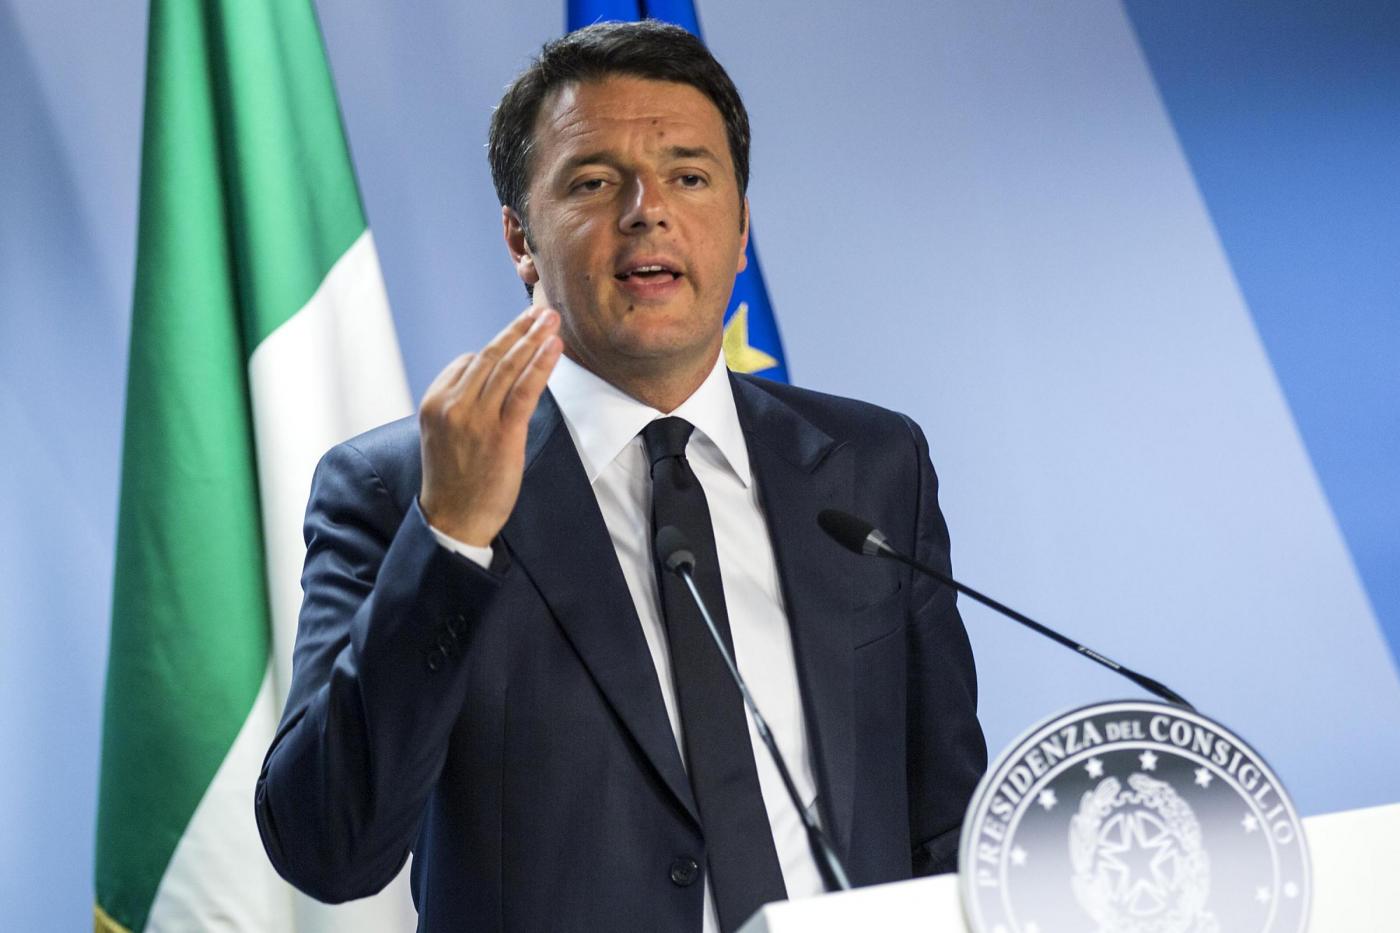 Matteo Renzi attacca il governo: “Non stanno mantenendo le promesse, sanno solo fare dirette su Facebook”